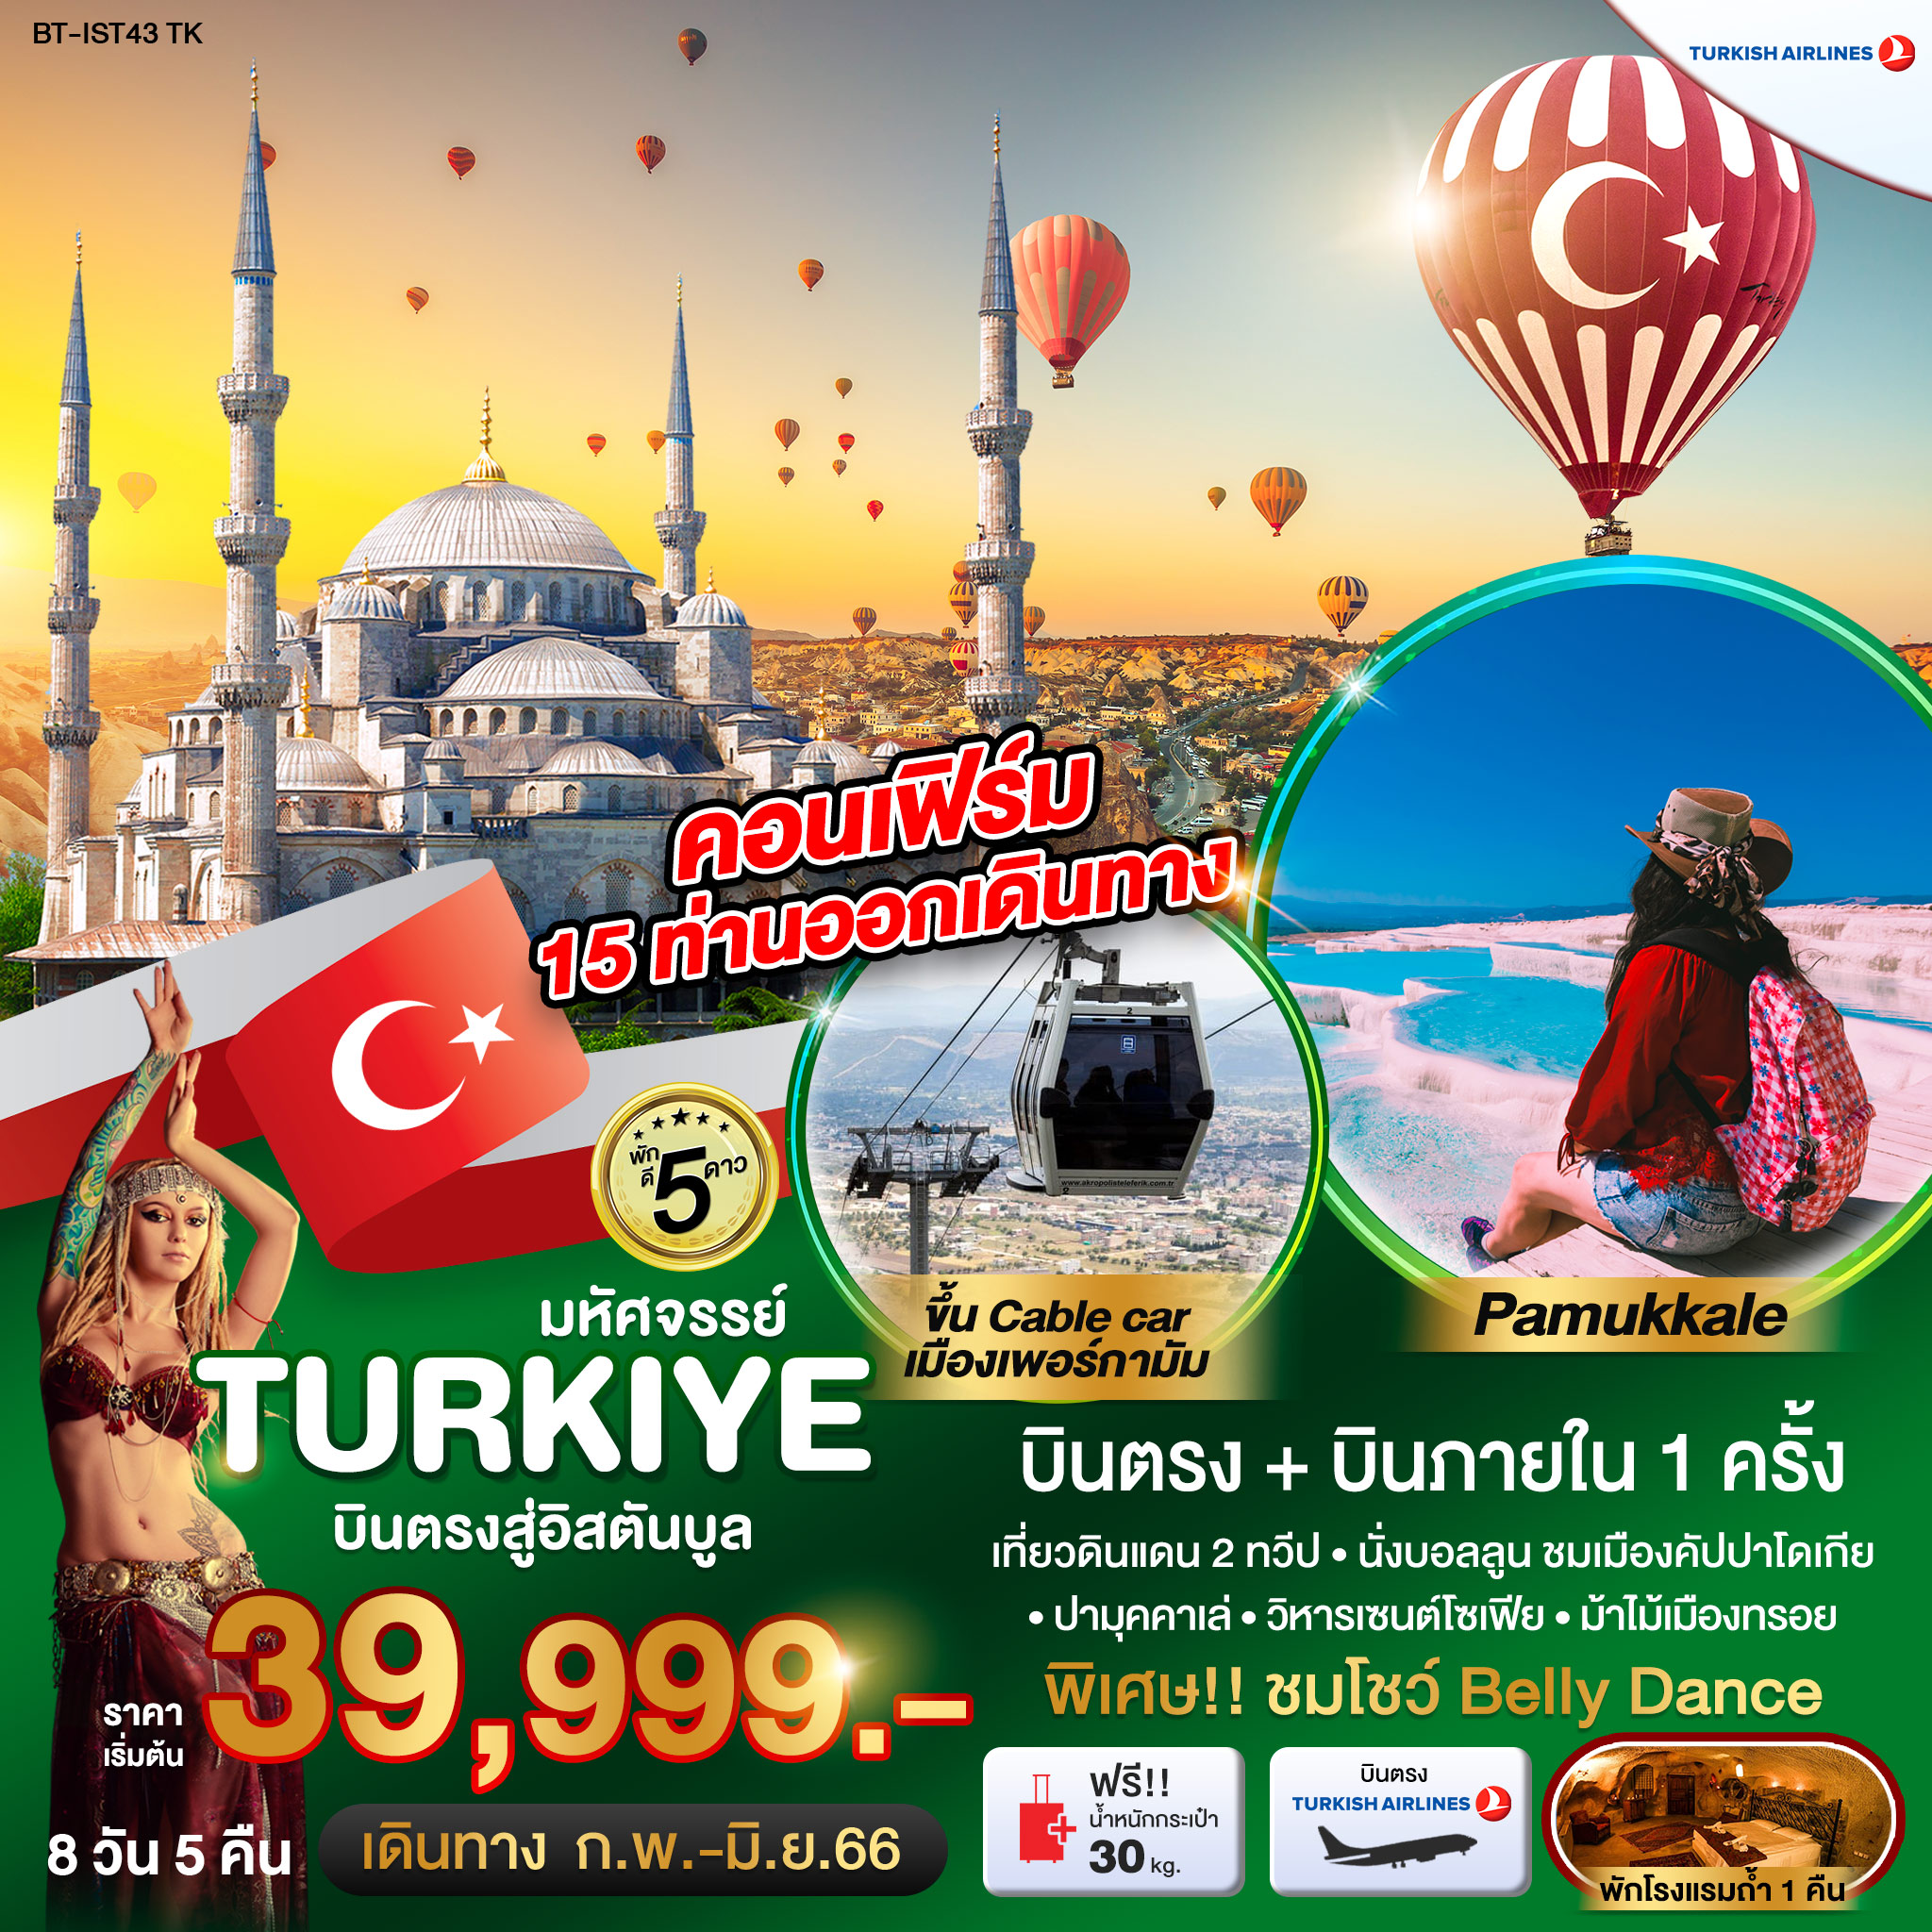 ทัวร์ตุรกี มหัศจรรย์...TURKEY บินภายใน 1 ขา นั่งกระเช้าเพอร์กามัม 8 วัน 5 คืน (TK) มี.ค.-มิ.ย. 66